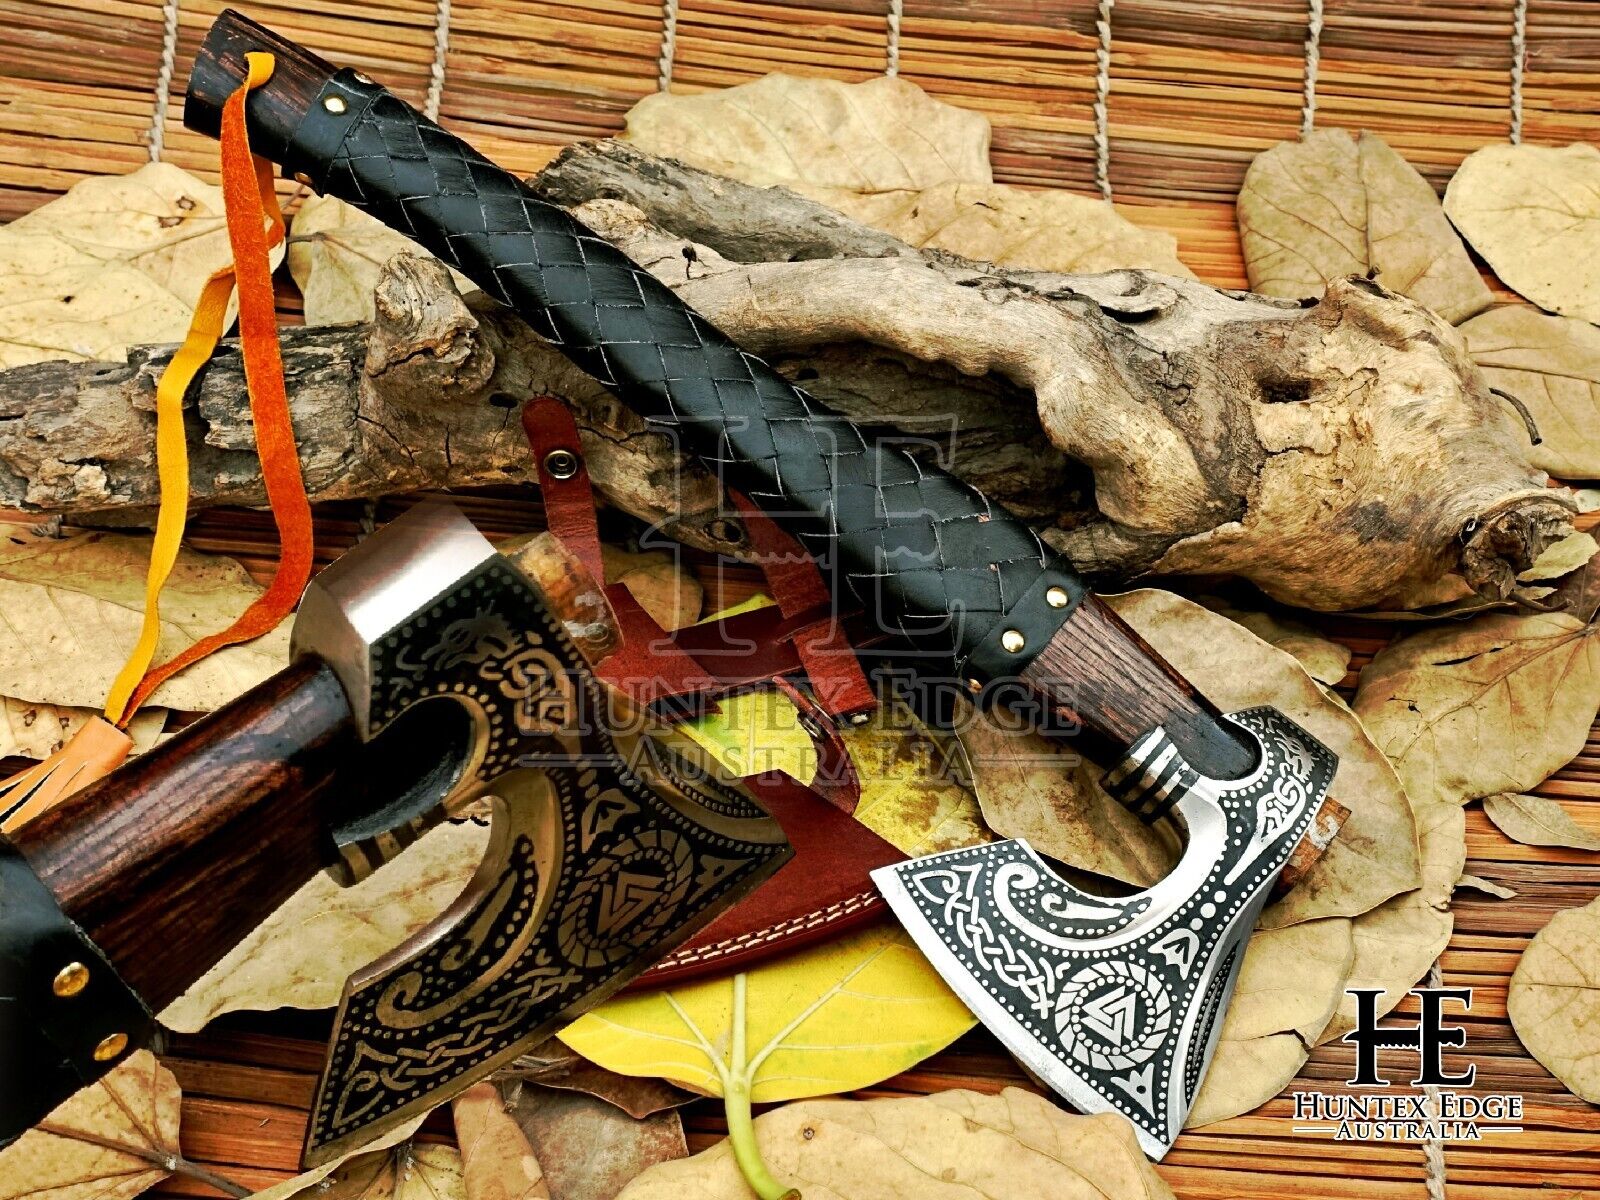 HUNTEX Handmade Carved 1095 Forged Carbon Steel Blade, 445mm Long Camper Hatchet